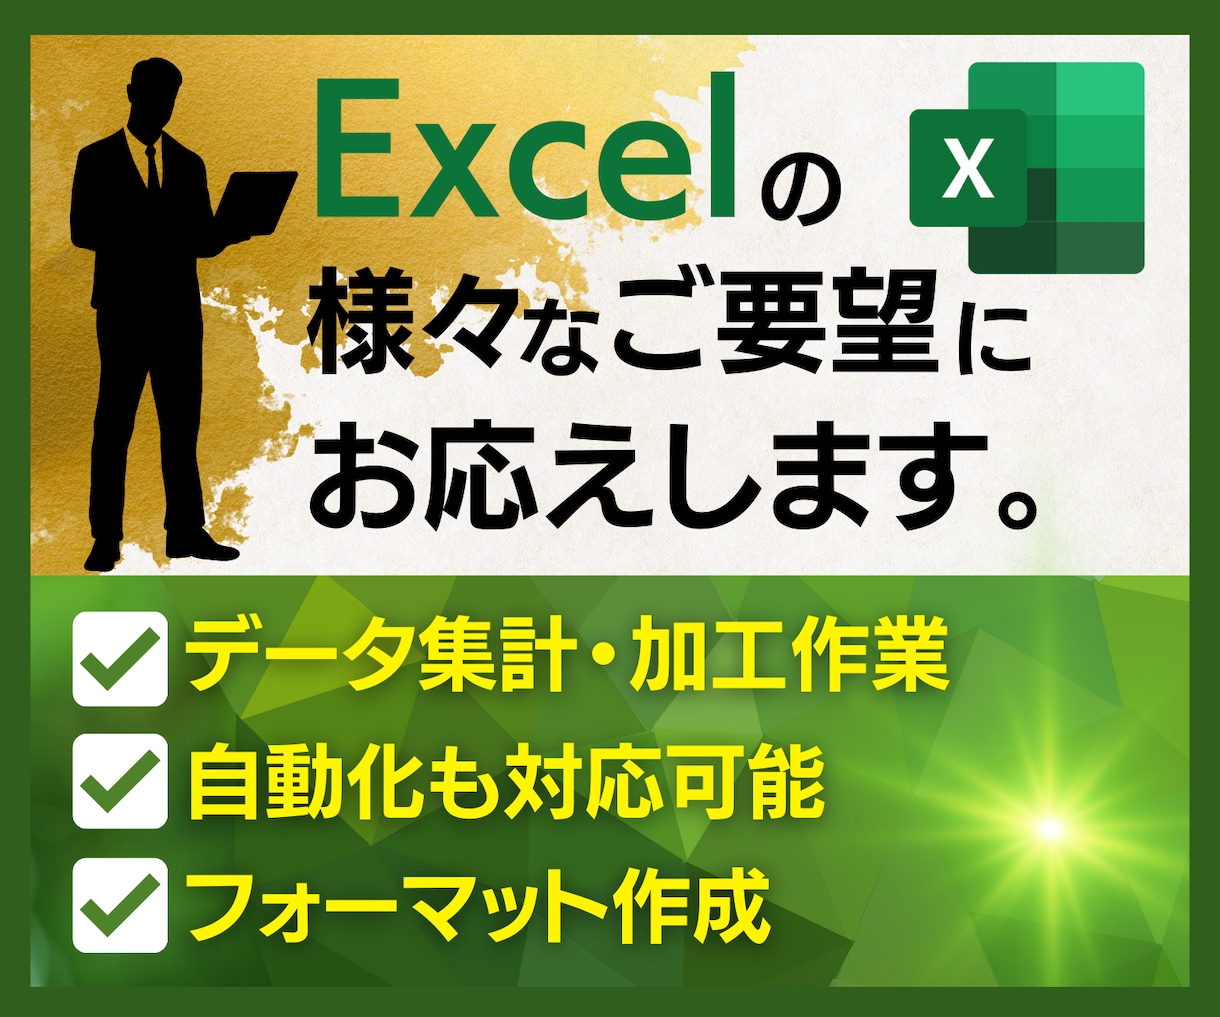 エクセル/Excel作業をなんでも代行いたします Excelの様々なご要望に対し、丁寧に対応します！ イメージ1